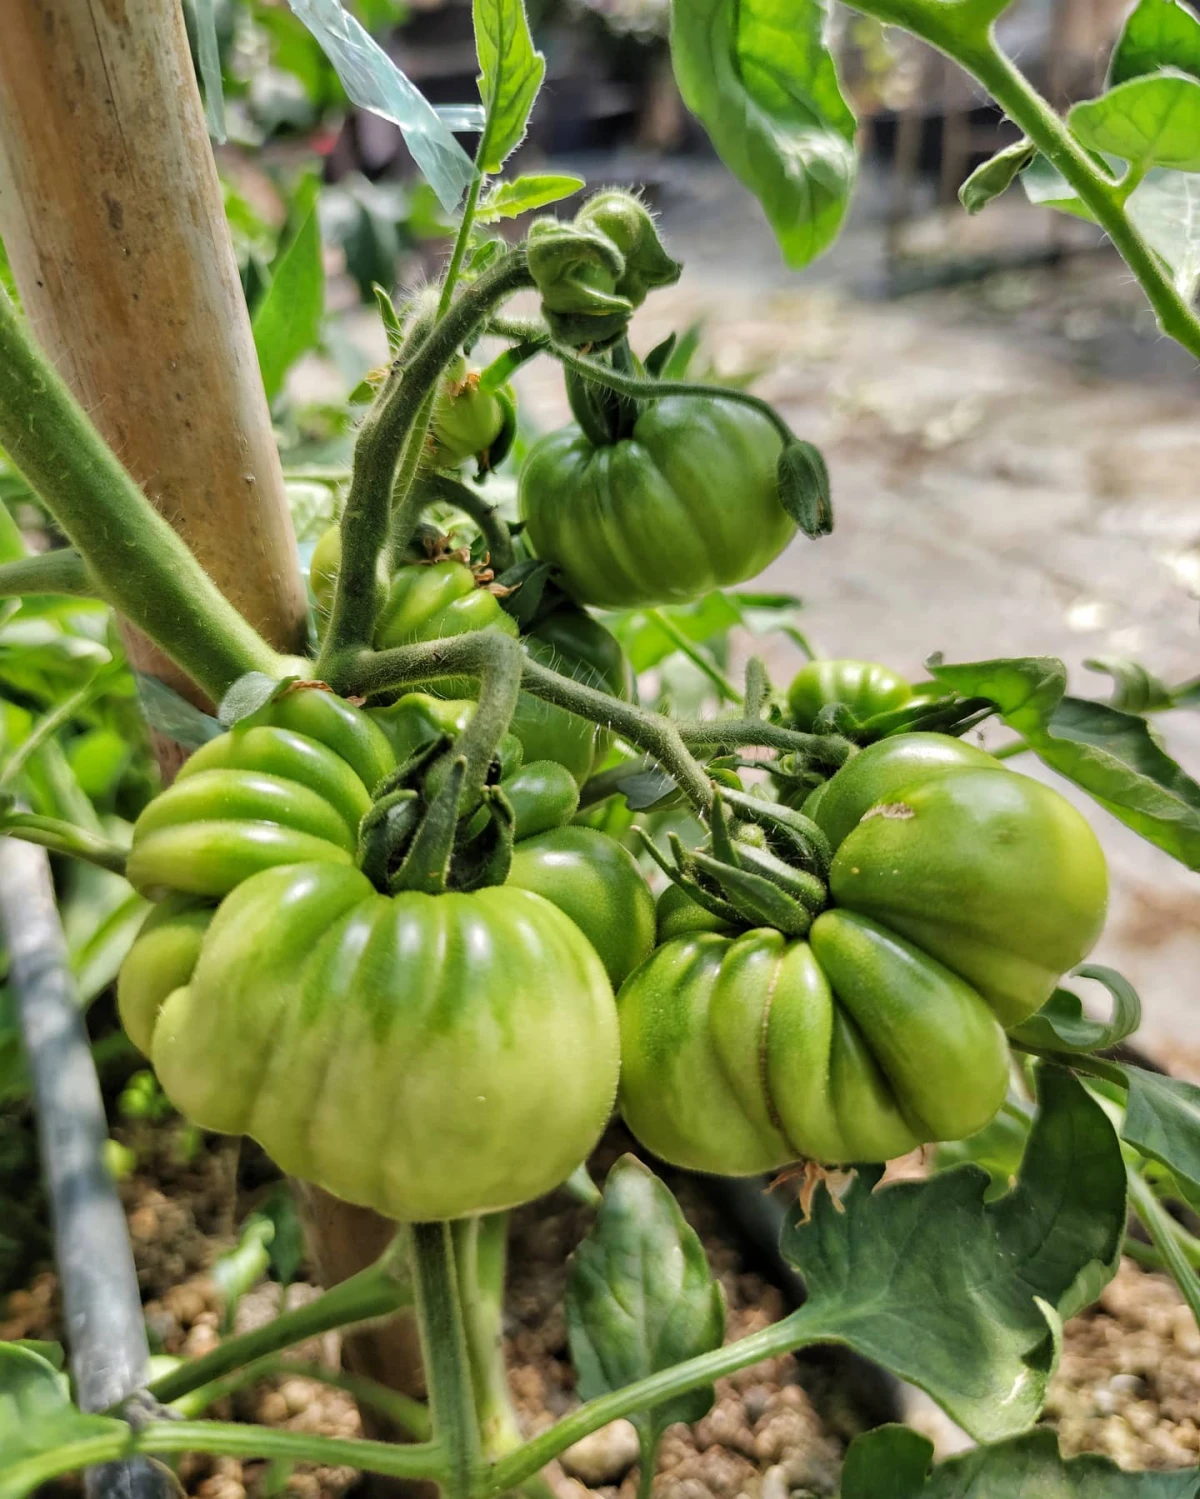 comment avoir une belle recolte de tomates vertes